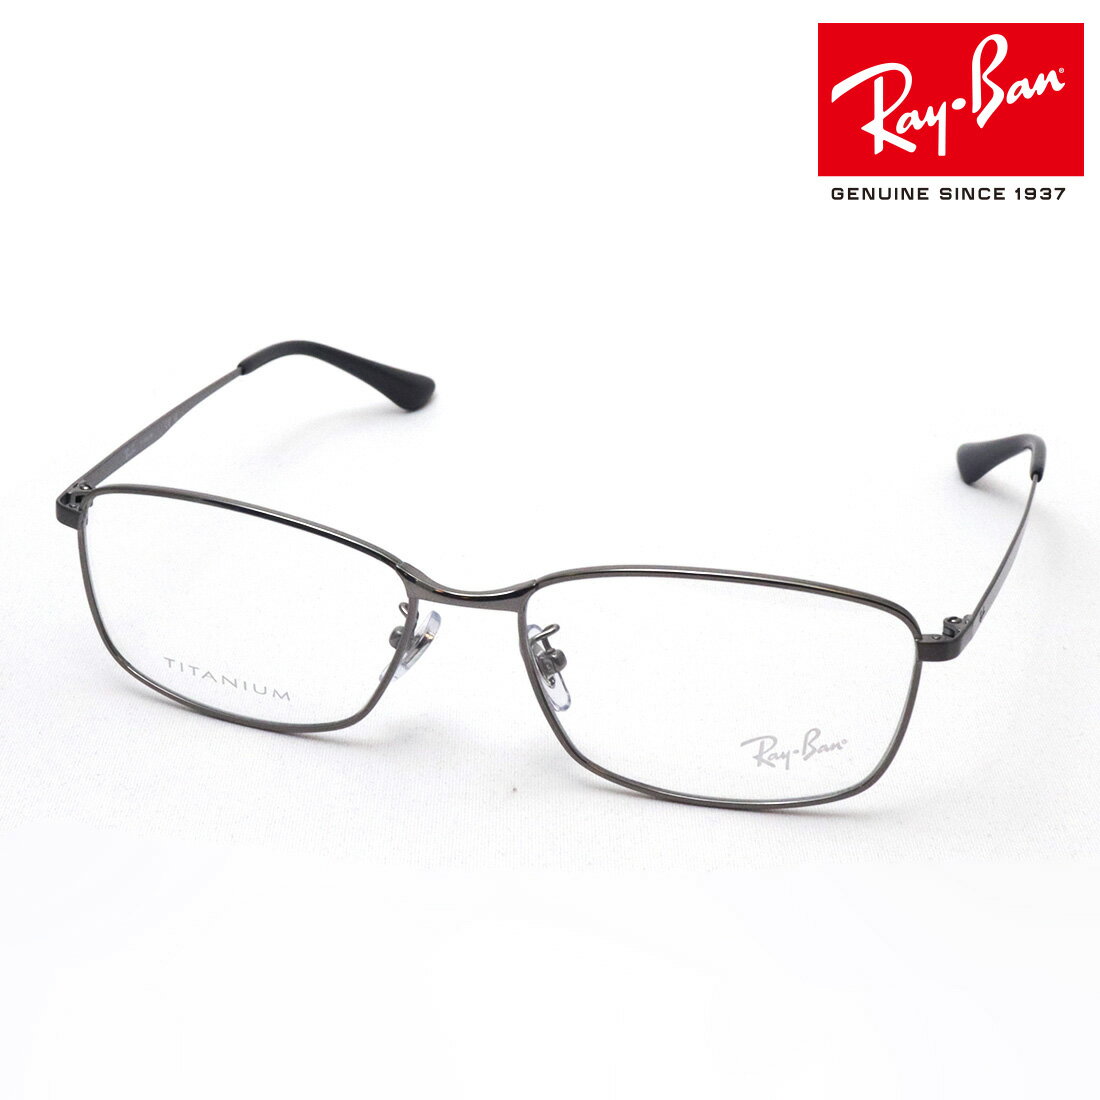 レイバン メガネ メンズ 正規レイバン日本最大級の品揃え レイバン メガネ フレーム Ray-Ban RX8775D 1047 伊達メガネ 度付き ブルーライト カット 眼鏡 メタル RayBan スクエア シルバー系